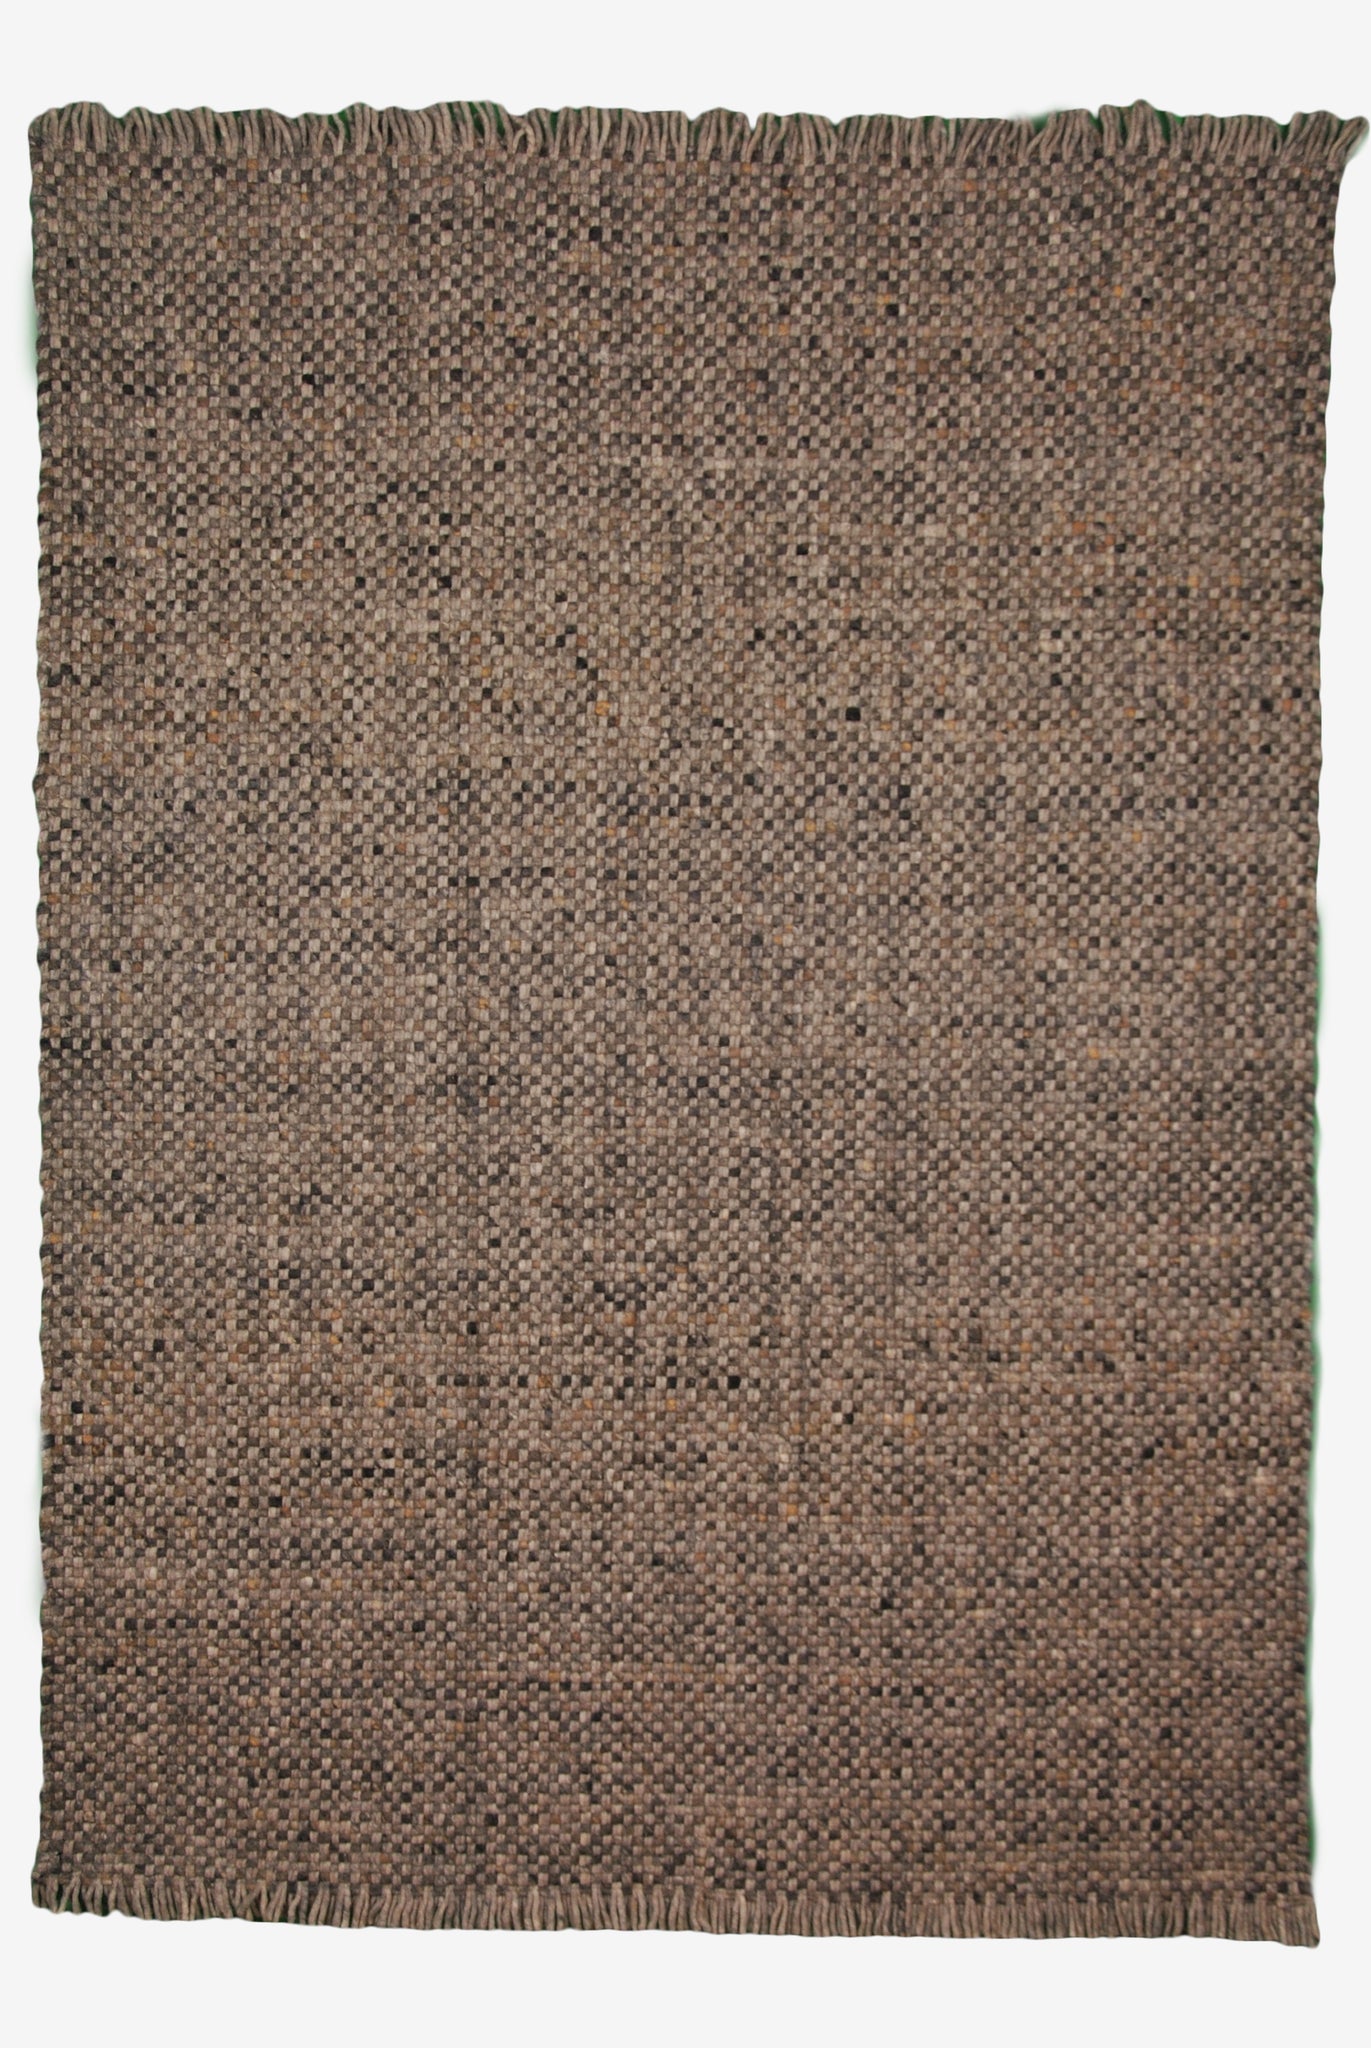 Handwebteppich Salsa Tonga 38 - Grau - 170 x 230 cm